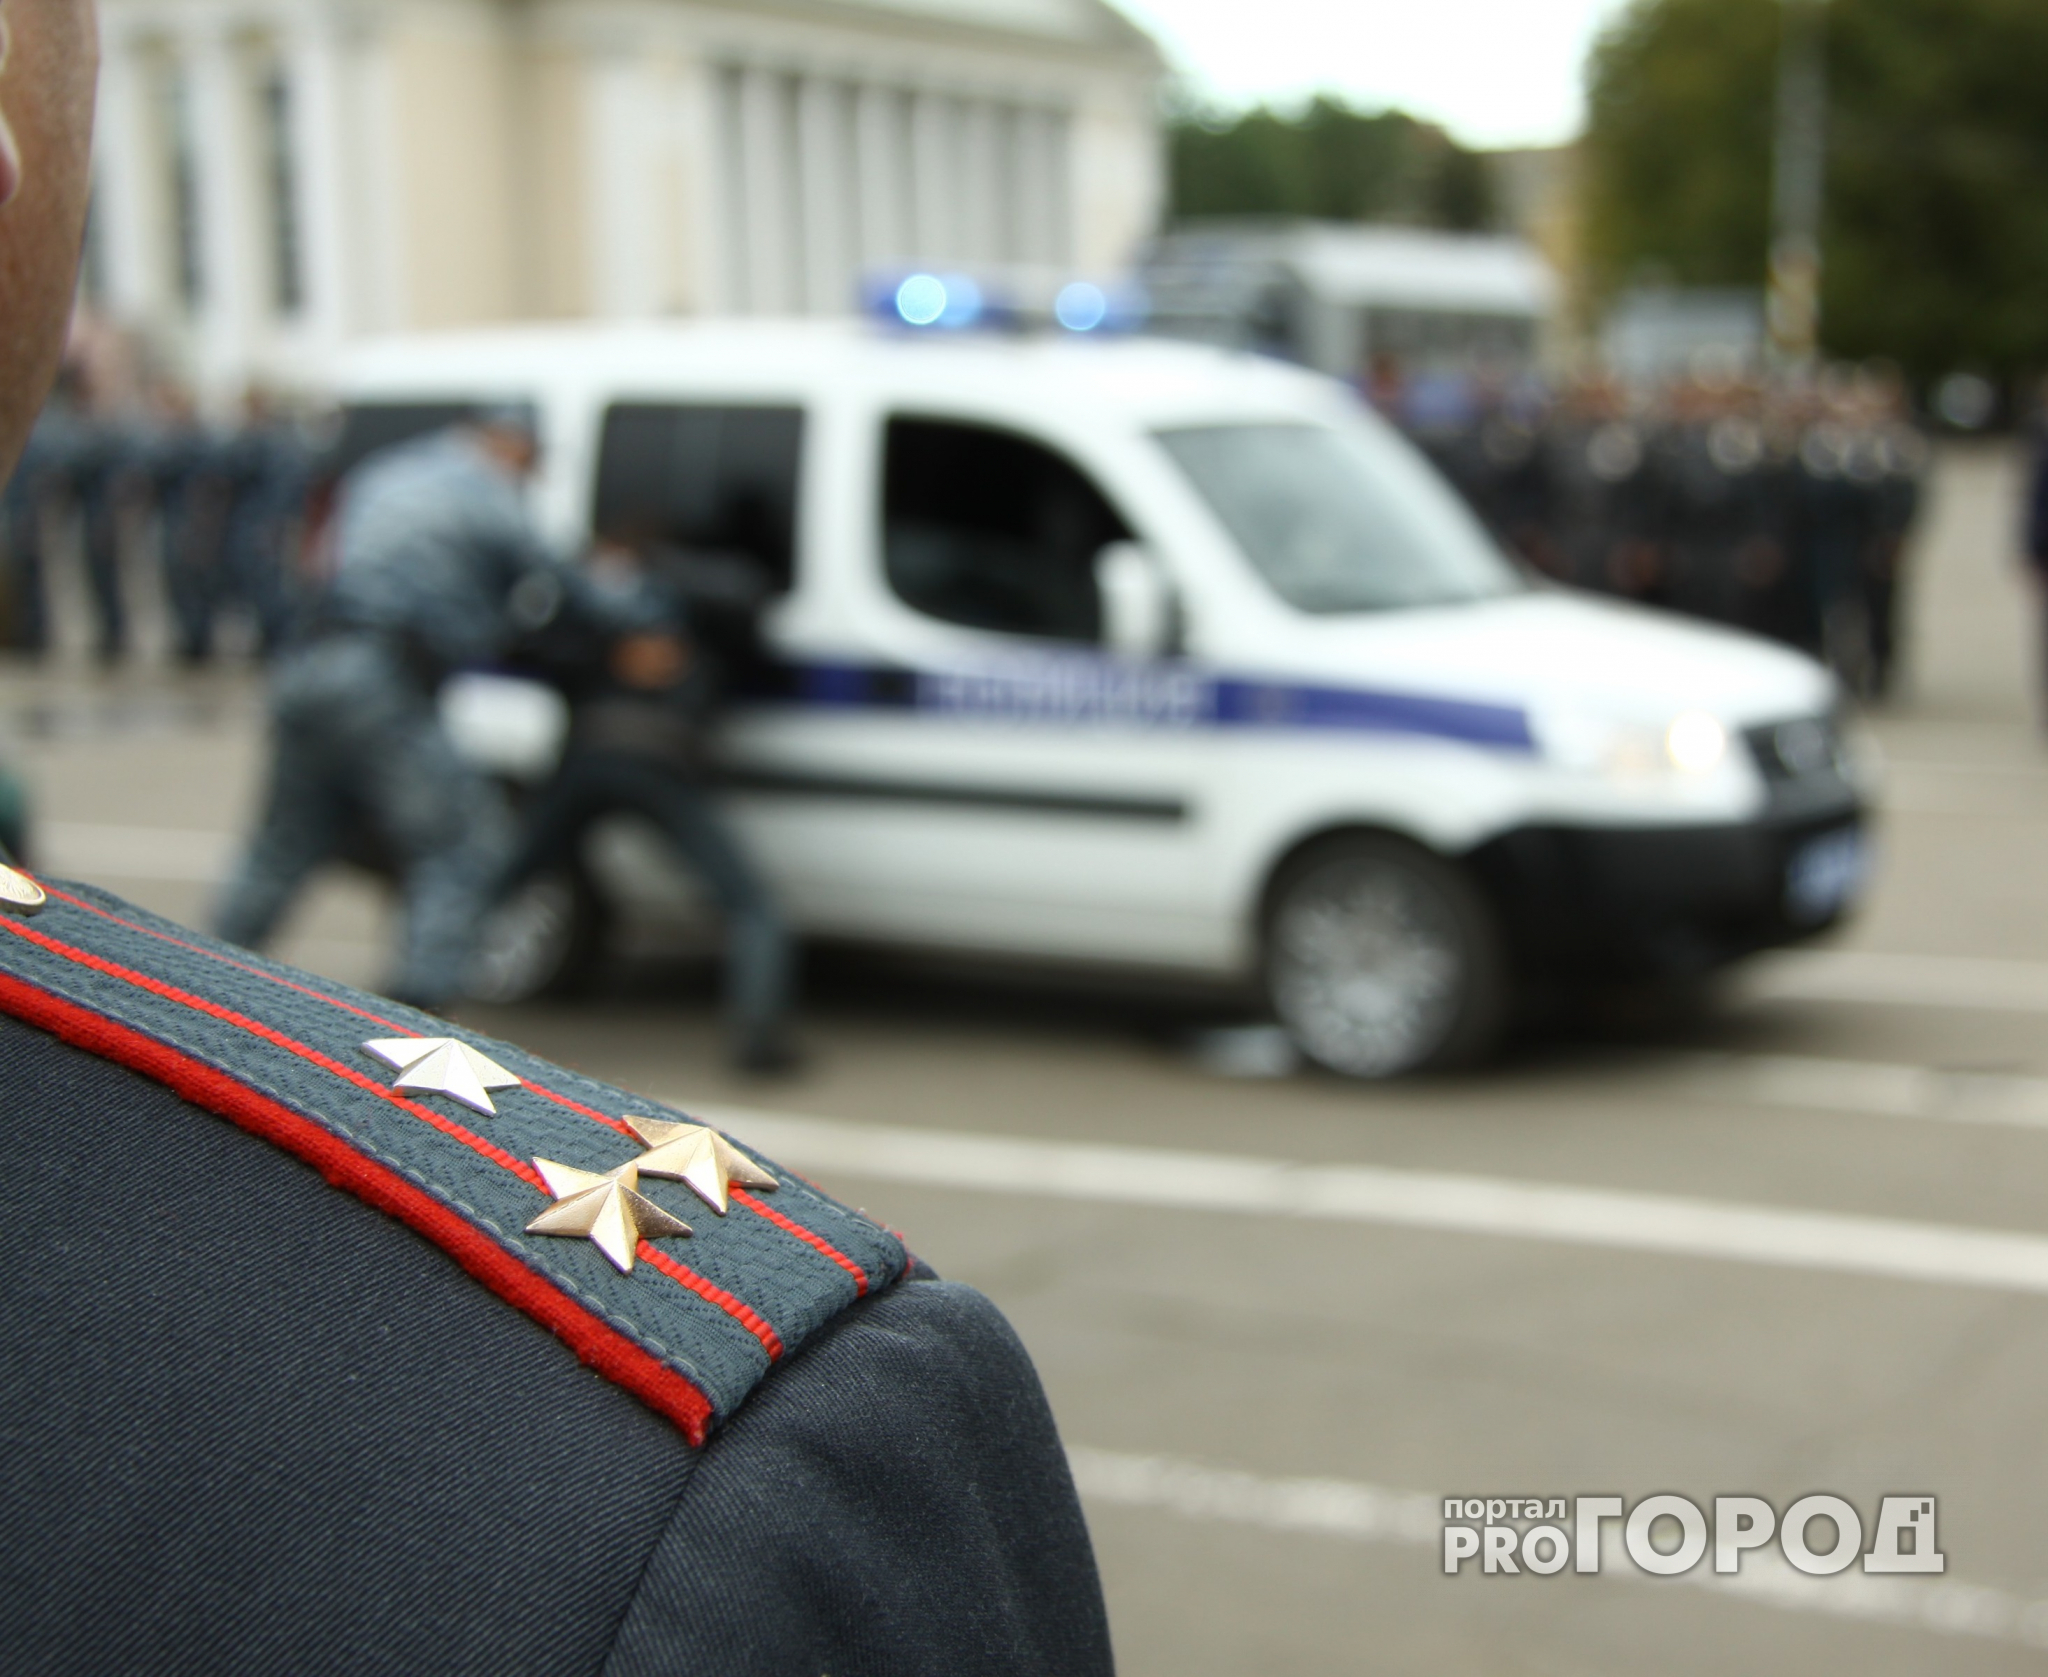 Нижегородские полицейские изощренно убивали алкоголиков, чтобы забирать их квартиры